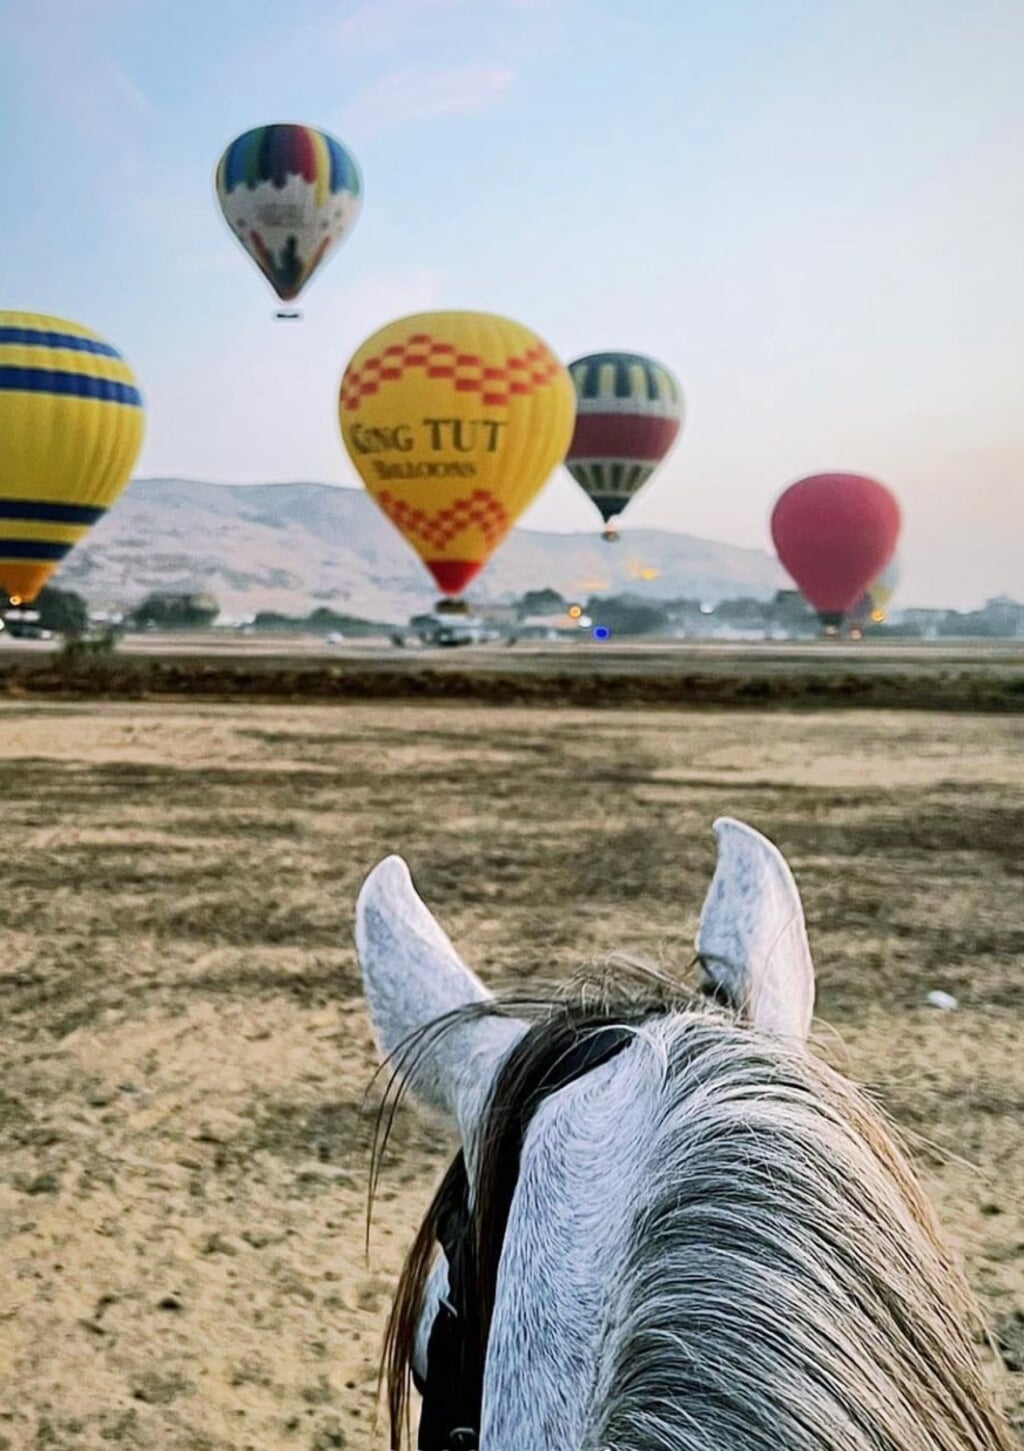 Luchtballonnen en Arabische volbloeden in Egypte.